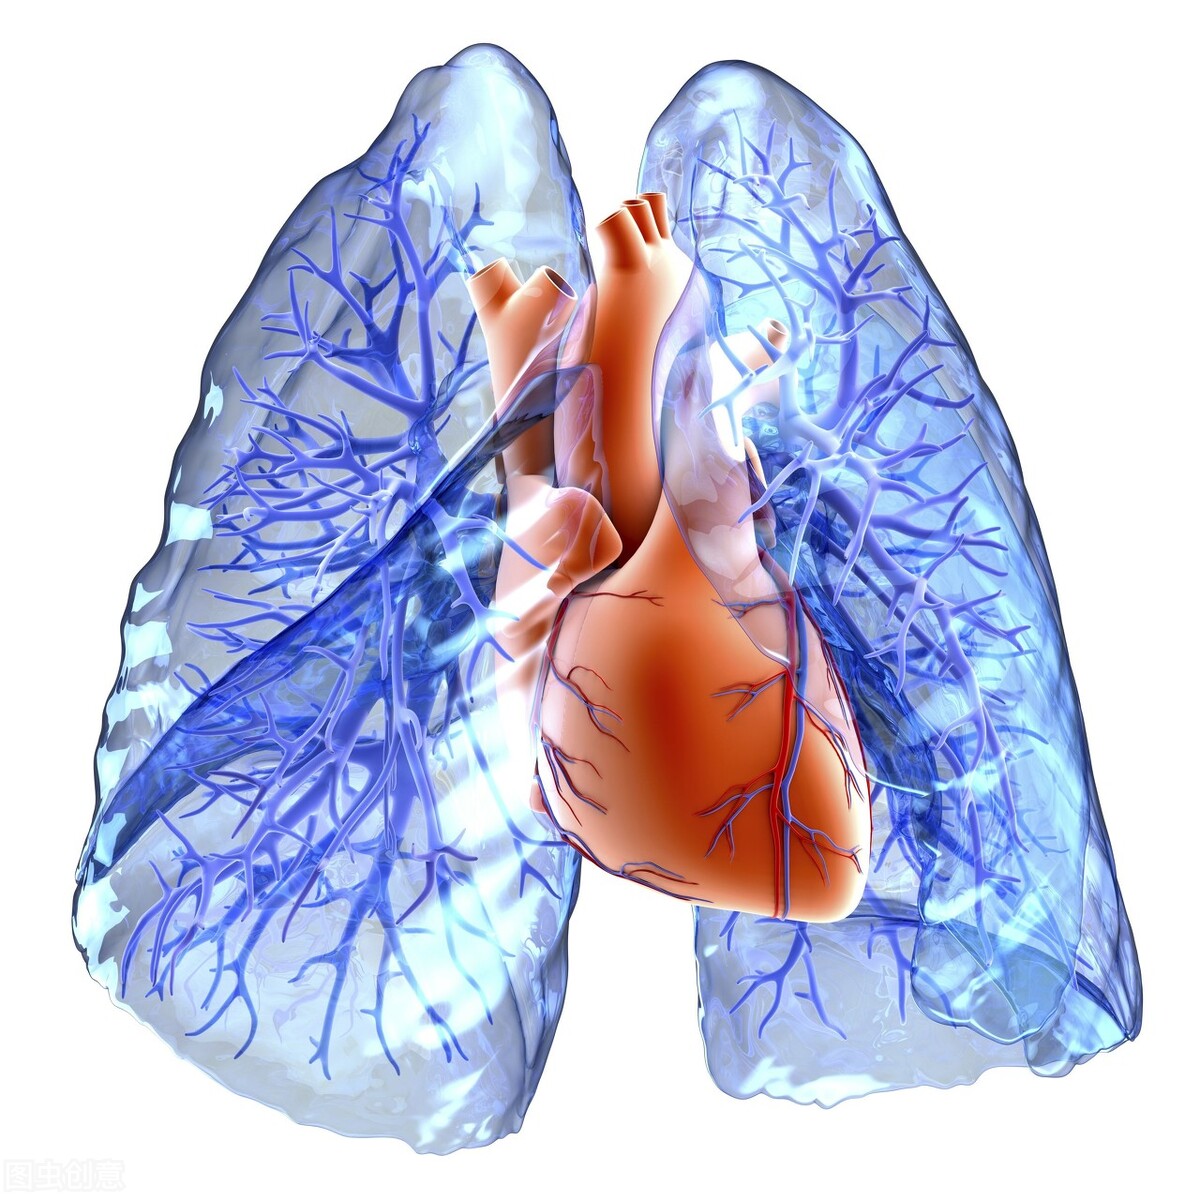 气短气喘，情绪低落？问题在肺肾，中医辨证调理，告别呼吸问题